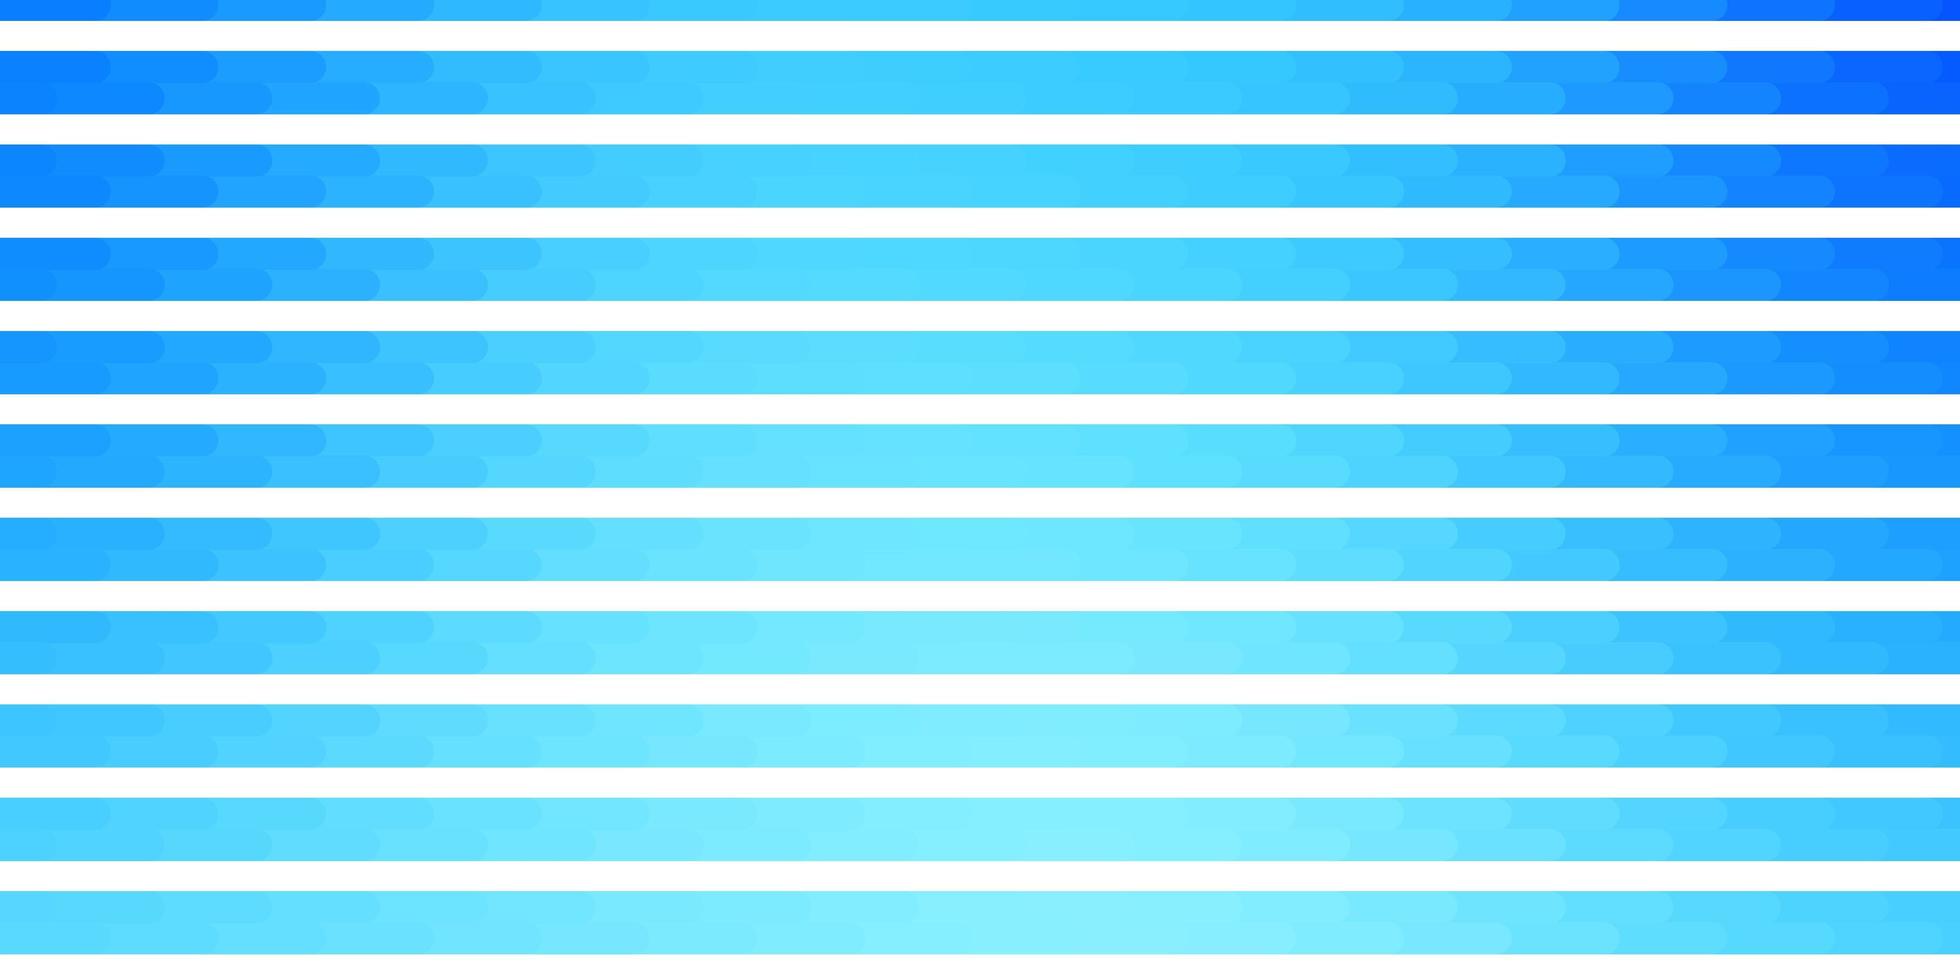 lichtblauw vector sjabloon met lijnen.